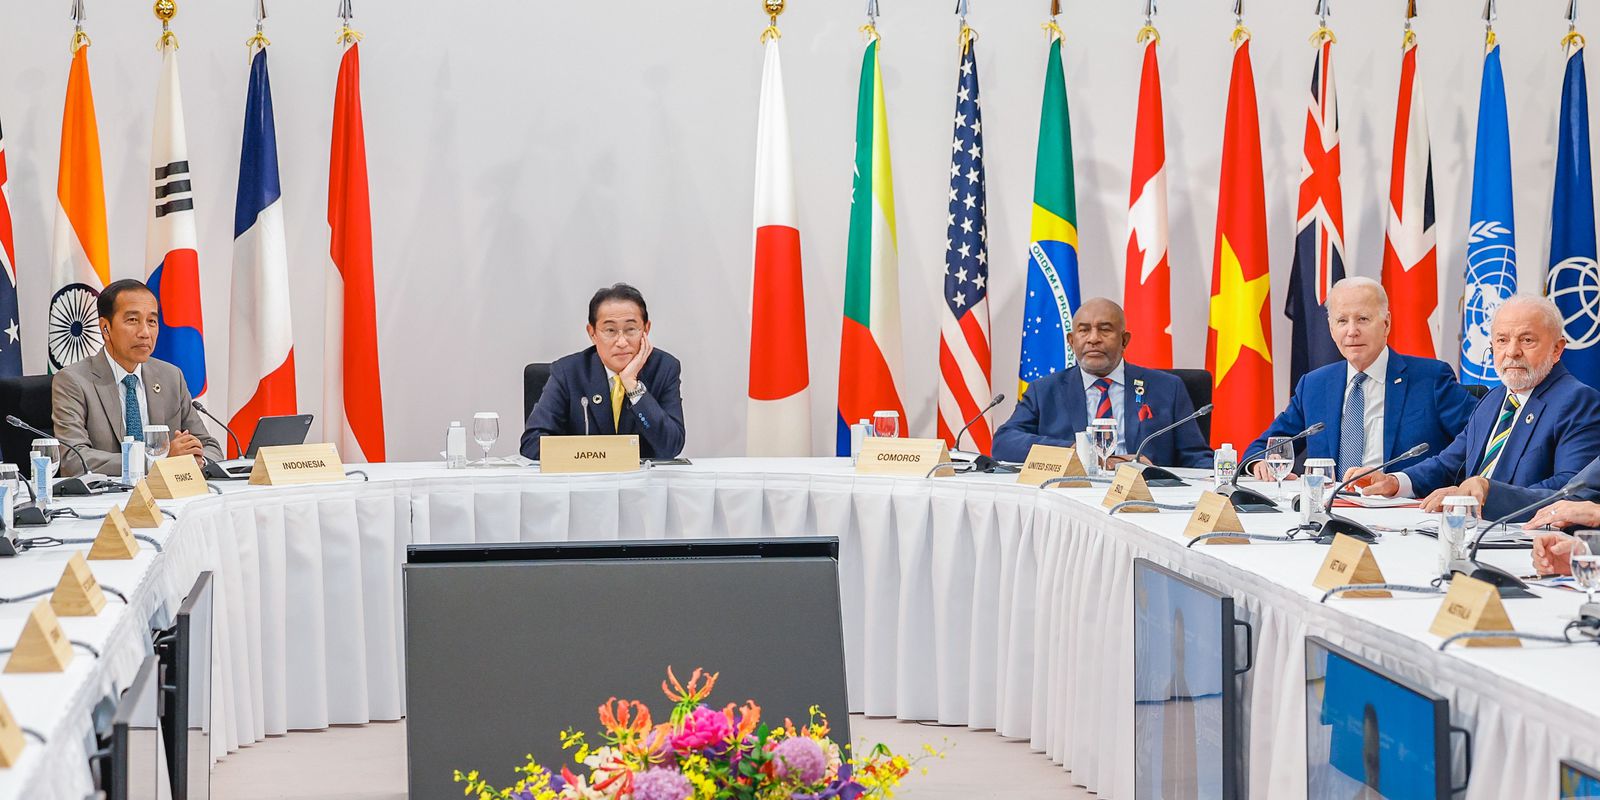 g7-promete-esforcos-para-atingir-cobertura-universal-de-saude-no-mundo